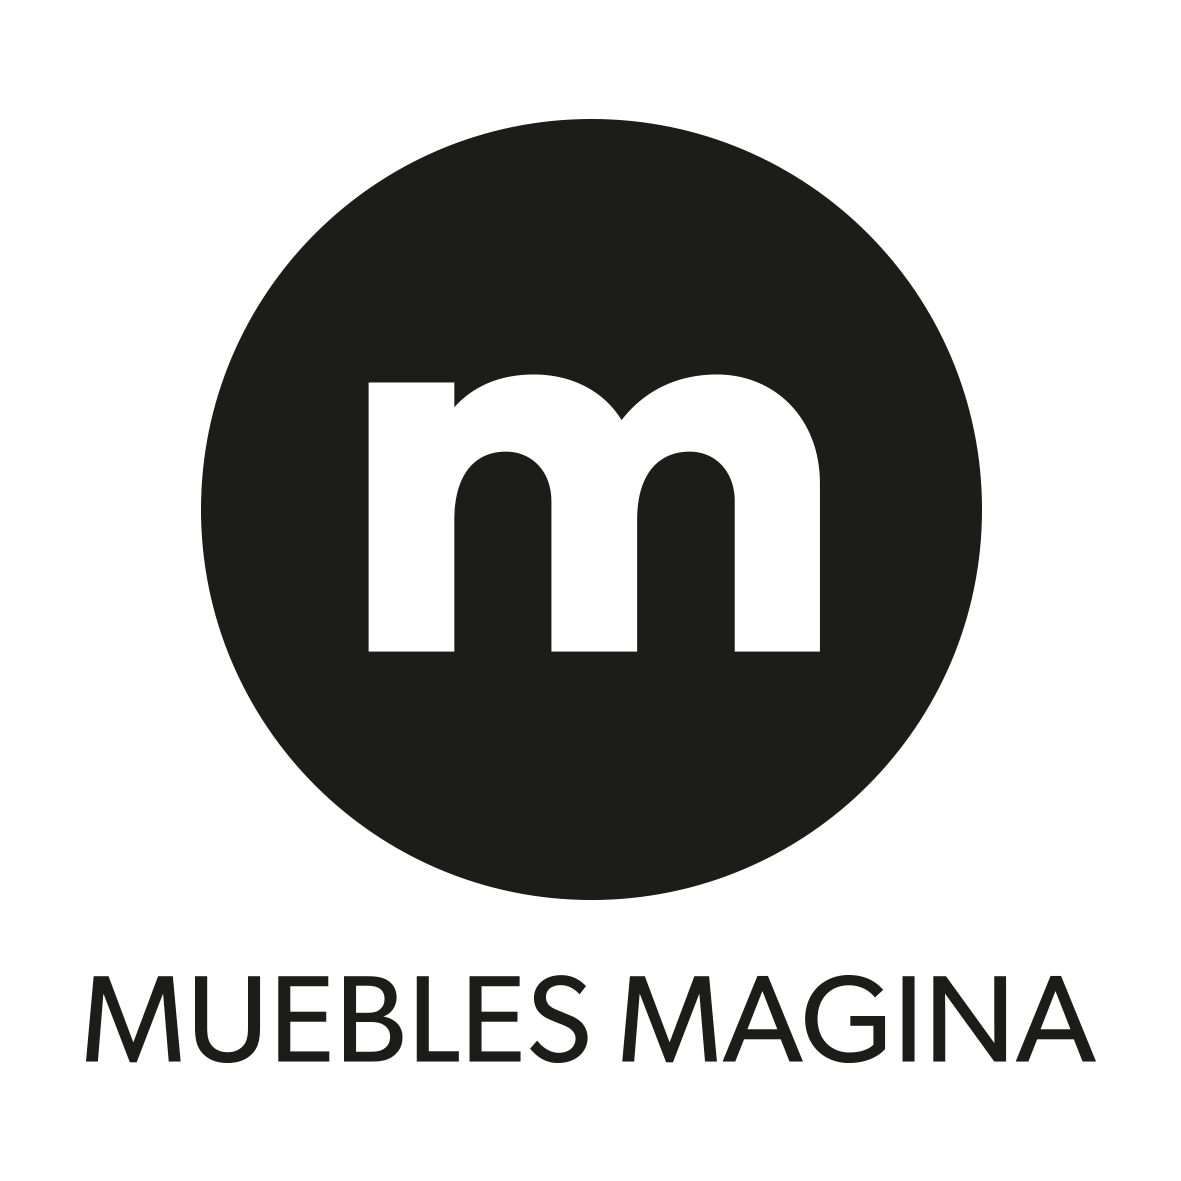 (c) Mueblesmagina.com